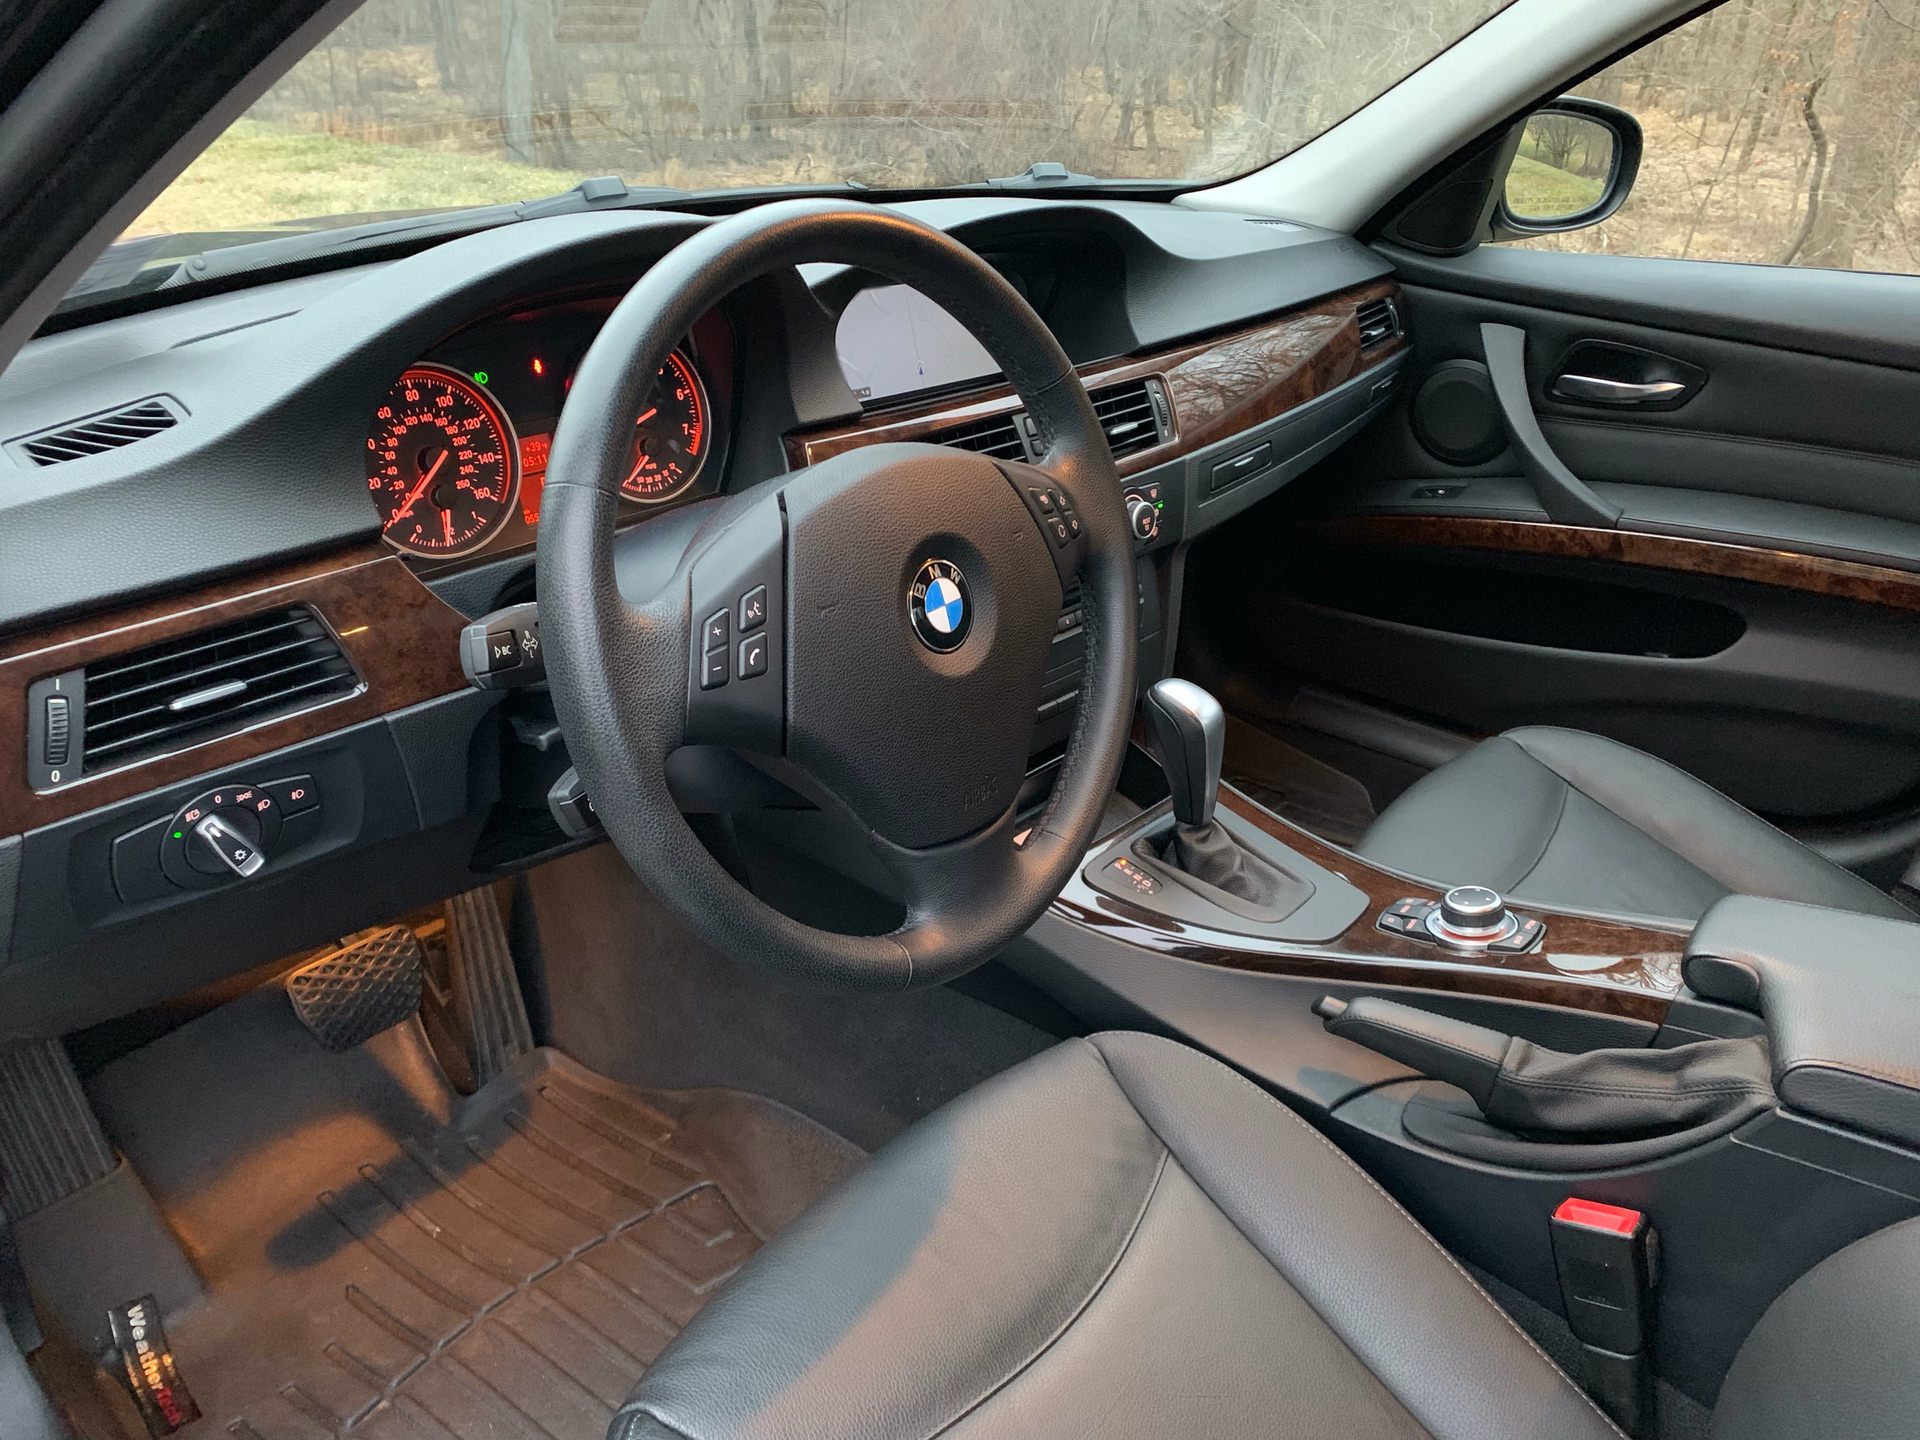 E90 interior vs E46 interior | BimmerFest BMW Forum